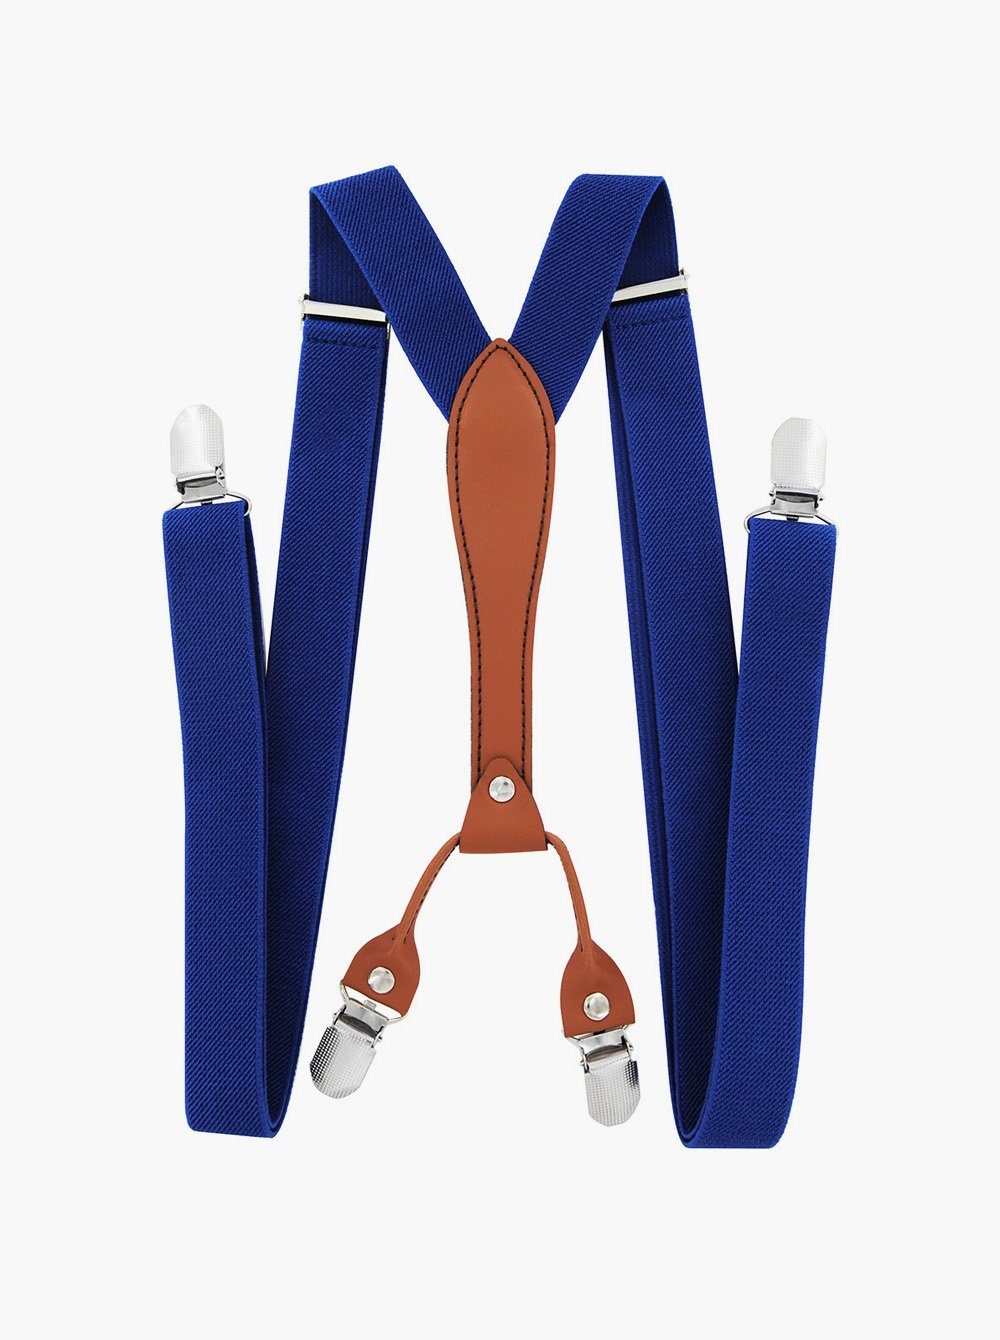 axy Hosenträger Herren Hosenträger 4 Stabile Clips X-Form 2,5cm Breit verstellbar und elastisch 120cm Lang Blau